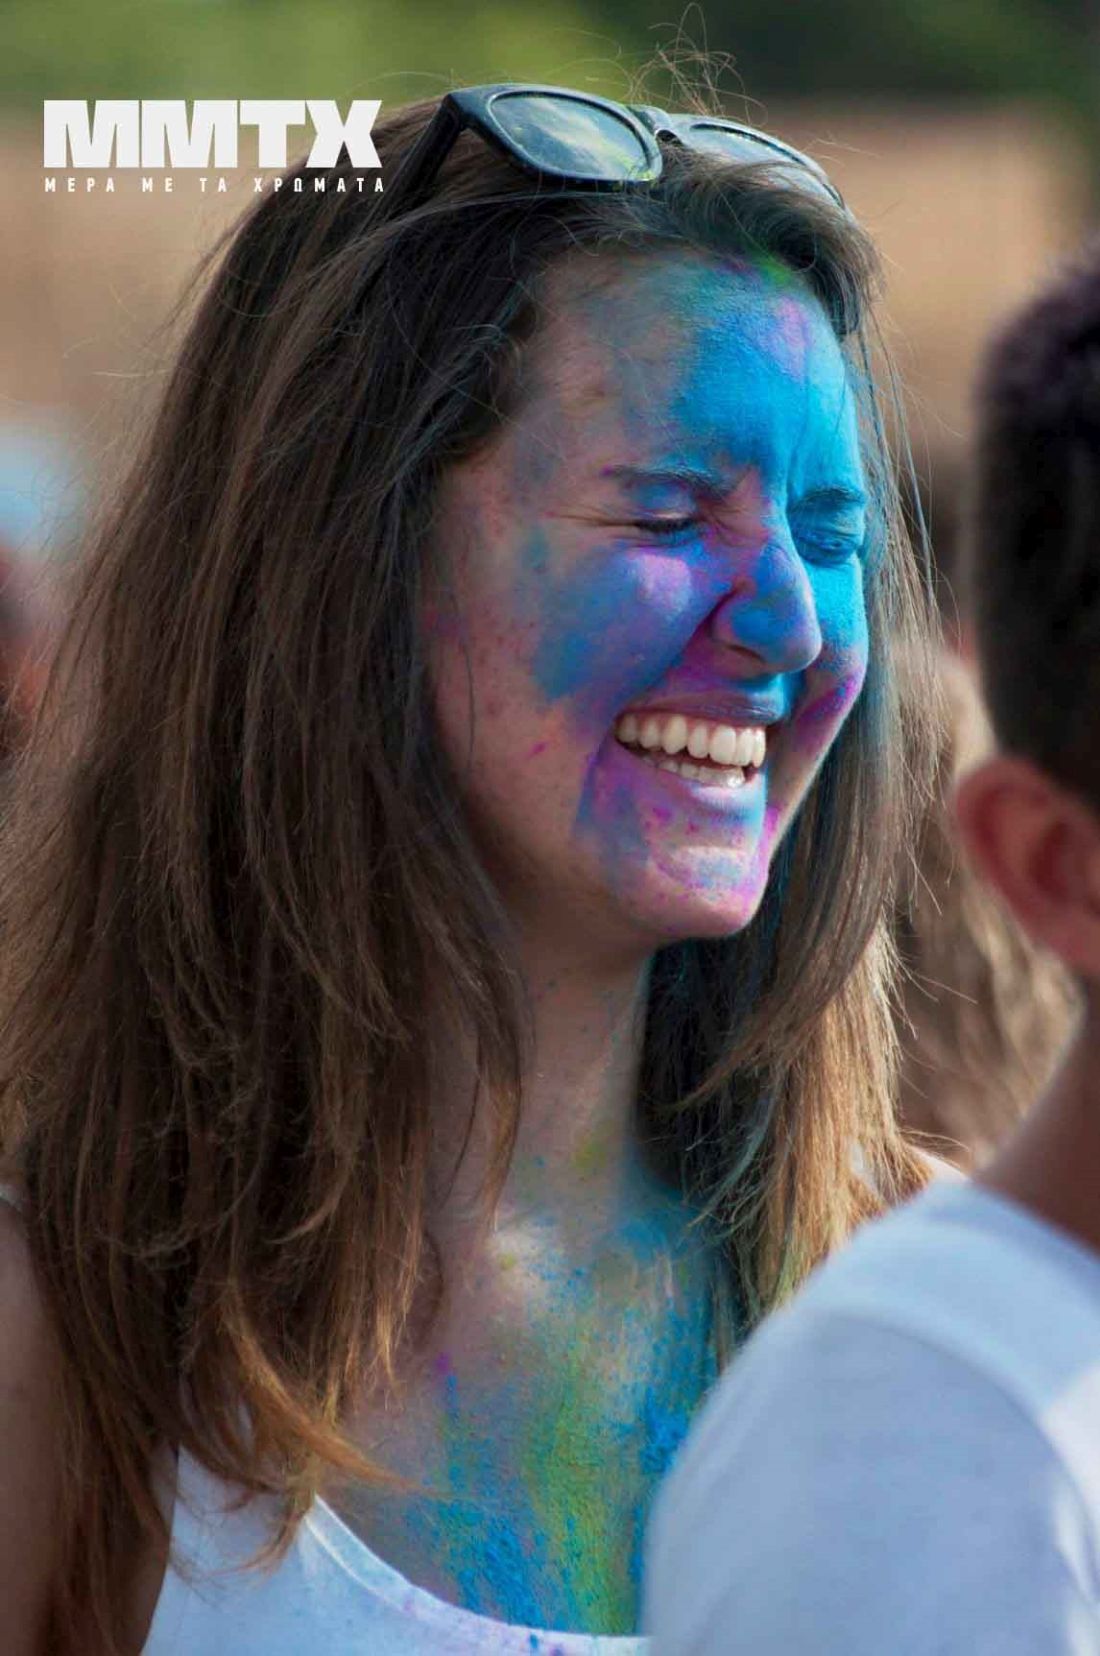 Θεσσαλονίκη: Η Μέρα με τα Χρώματα